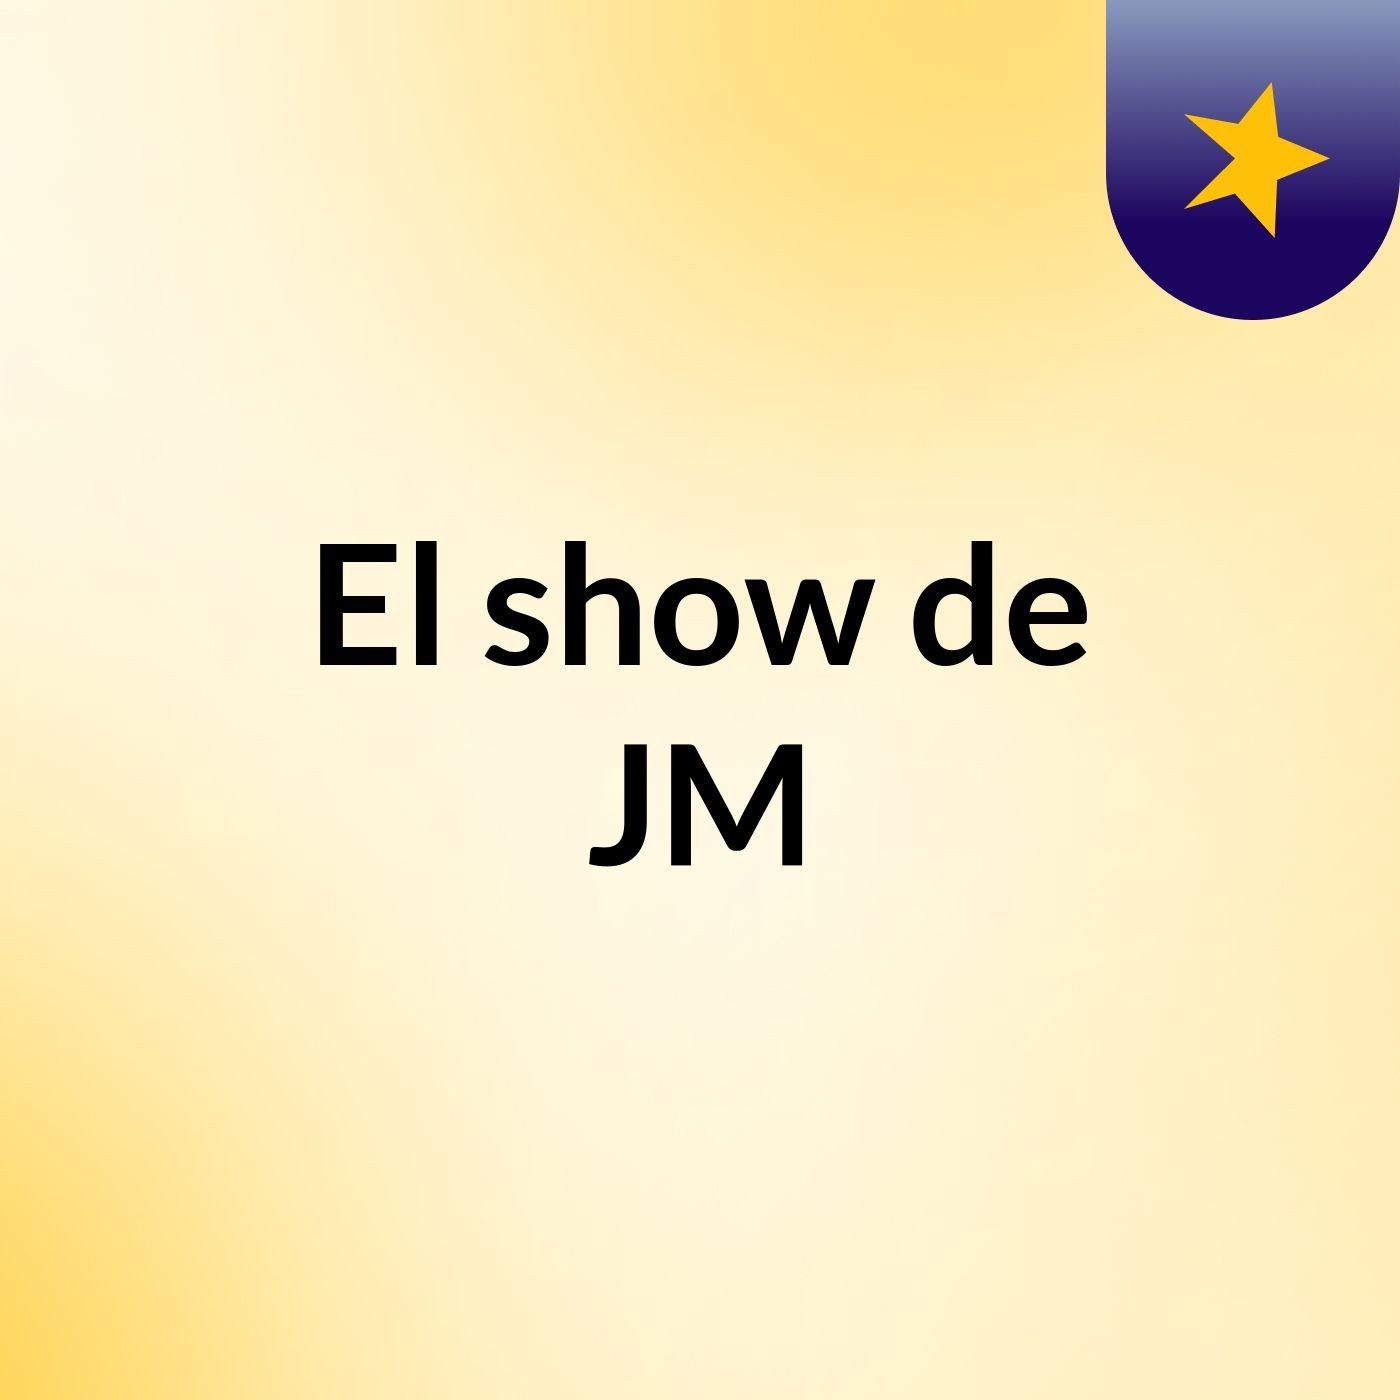 El show de JM